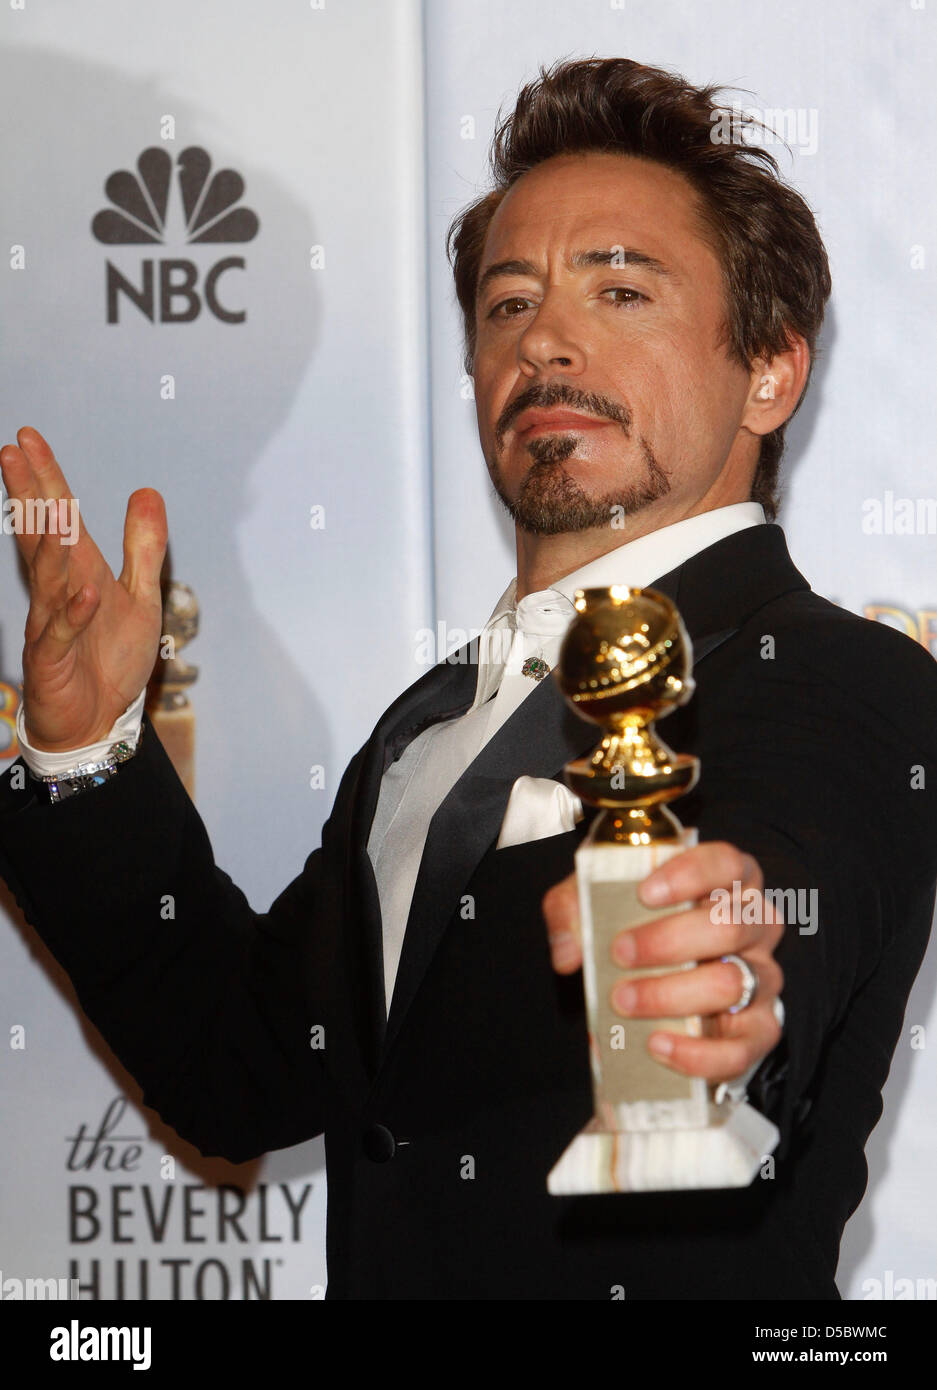 US-Schauspieler Robert Downey Jr., Sieger der besten Schauspieler in einer Bewegung Abbildung-Komödie / Drama Award für "Sherlock Holmes", stellt im Presseraum auf der 67. Golden Globe Awards in Los Angeles, USA, 17. Januar 2010. Die Golden Globes Ehre Exzellenz in Kino und Fernsehen. Foto: Hubert Boesl Stockfoto